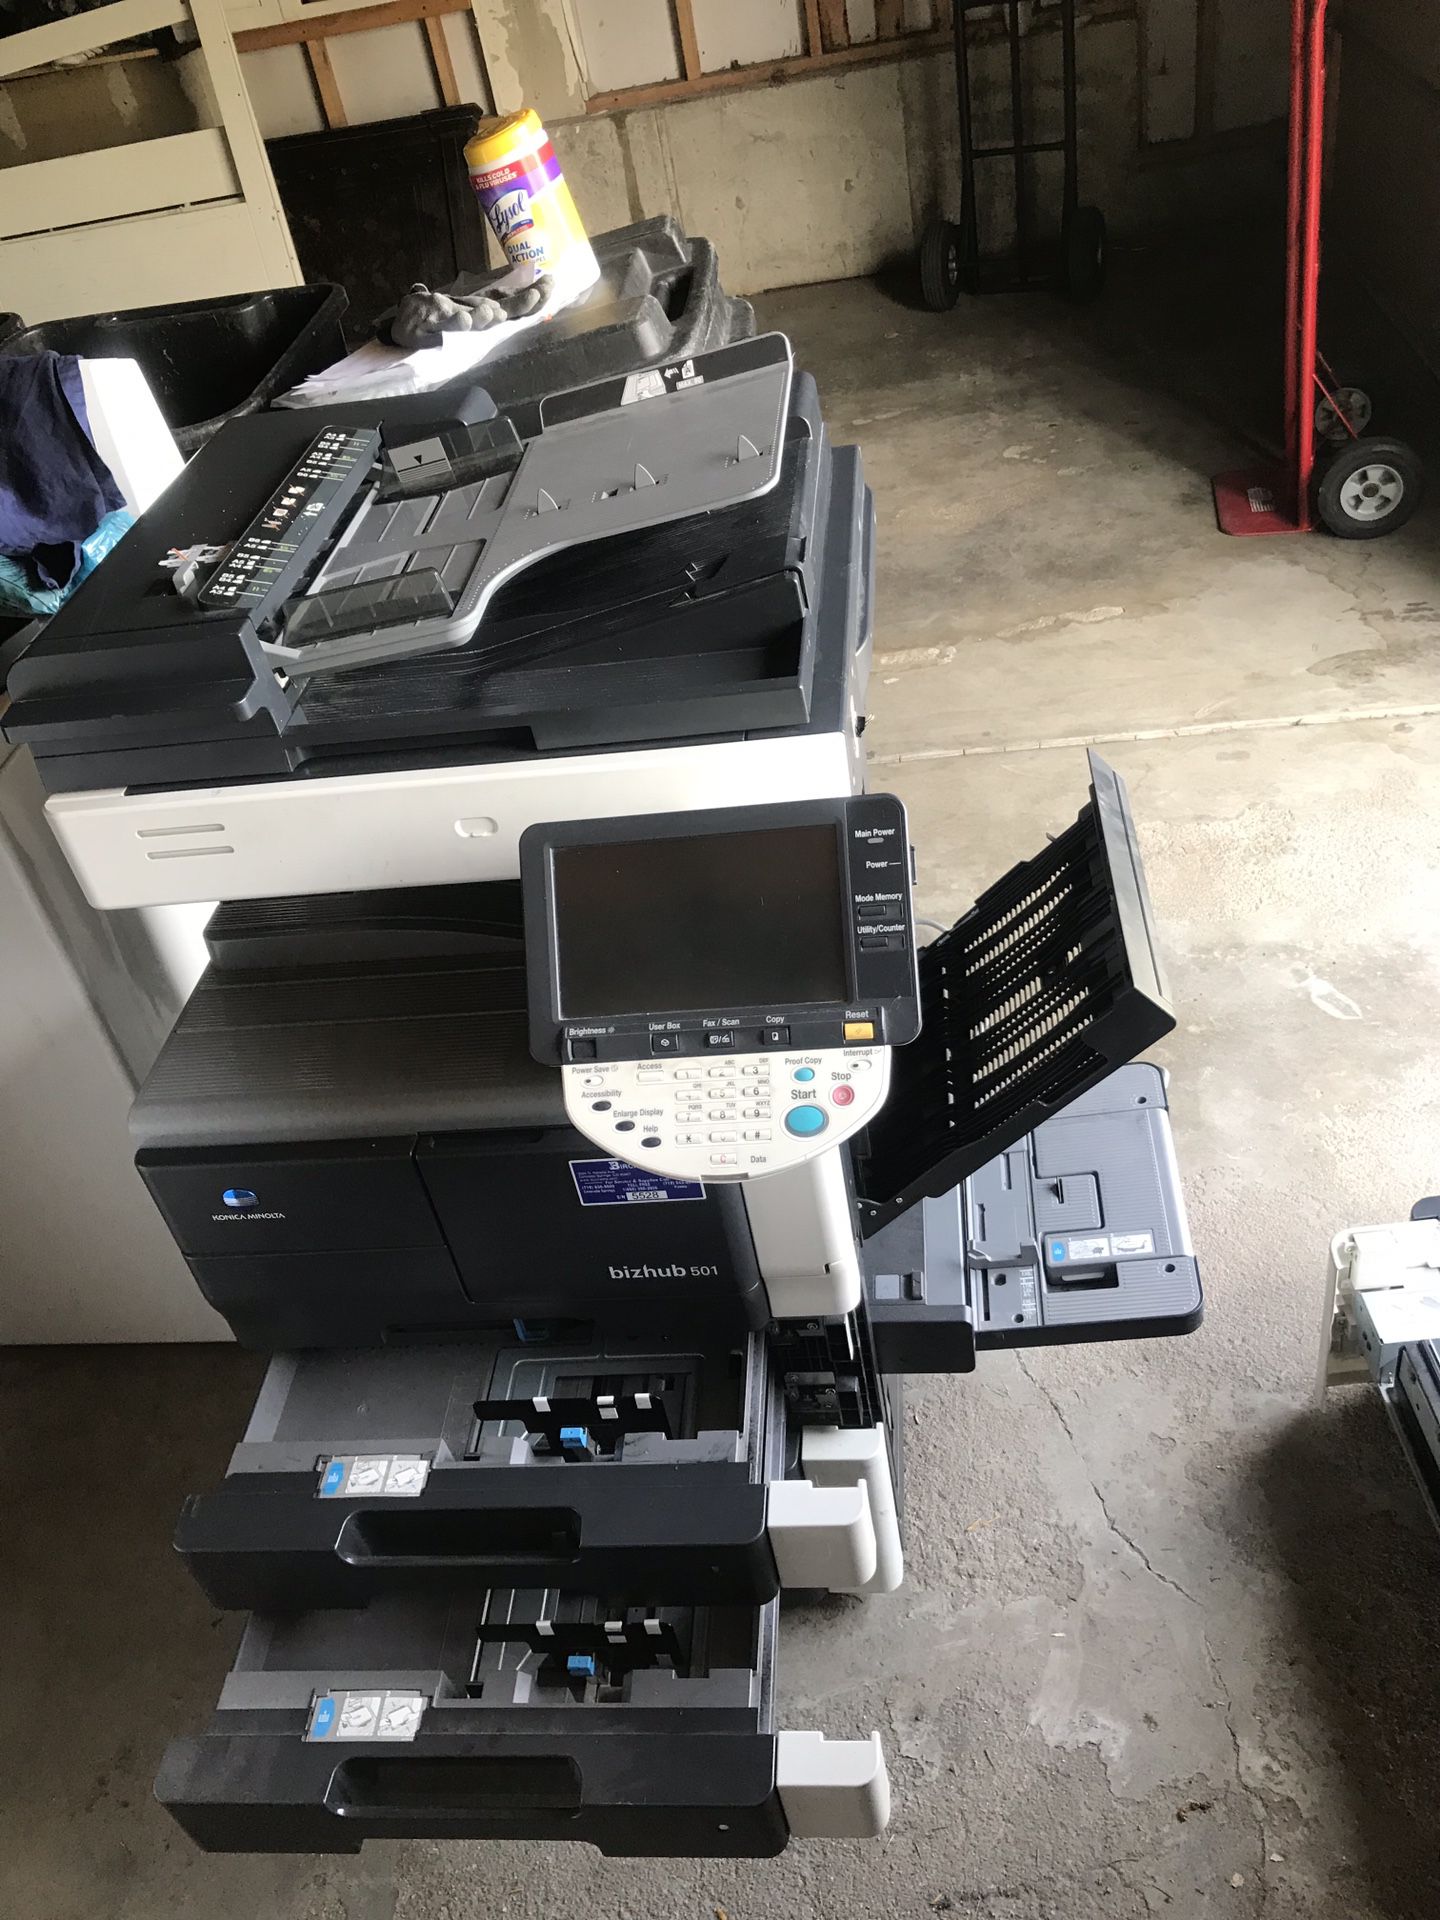 Biz Hub 501 printer/copier